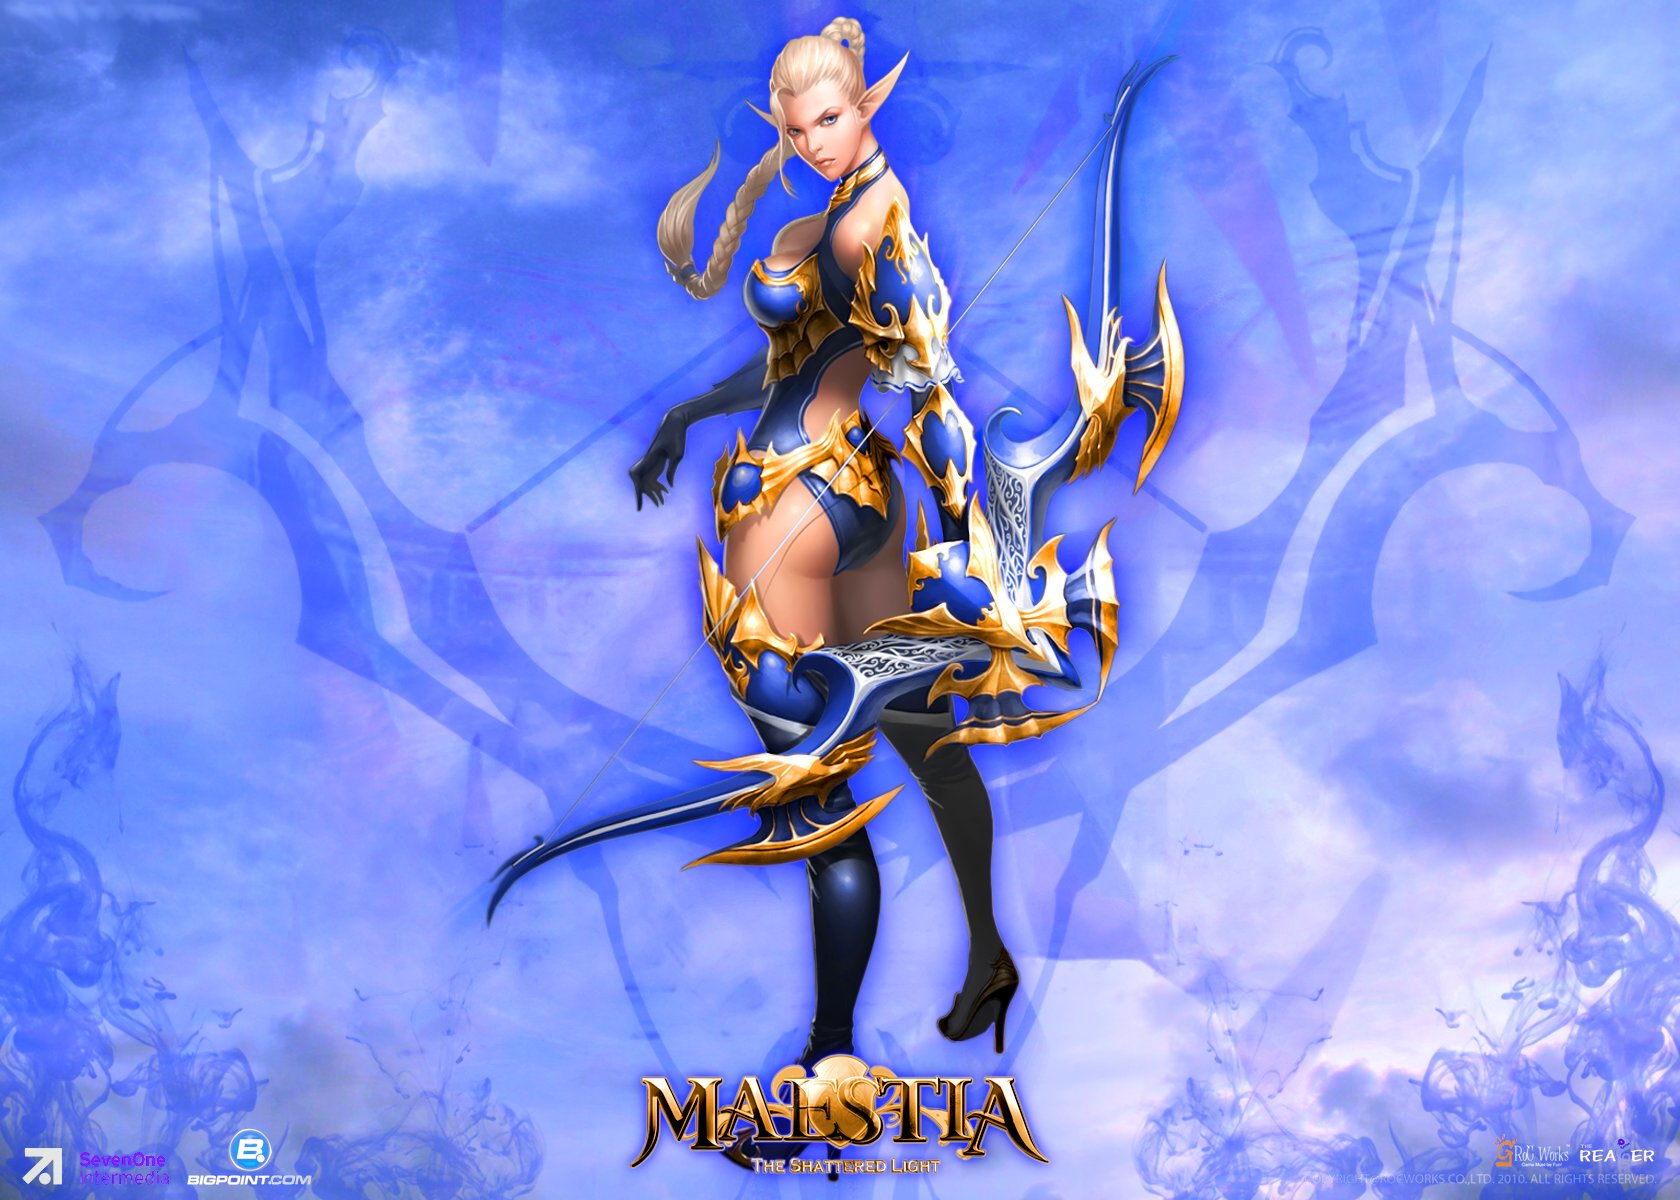 maestia, Online, Fantasy, Mmo, Rpg, Adventure, Action, Strategy, Fighting, Gods, Rise, Keledus, 1maestia, Elf, Elves, Poster, Archer, Girl Wallpaper